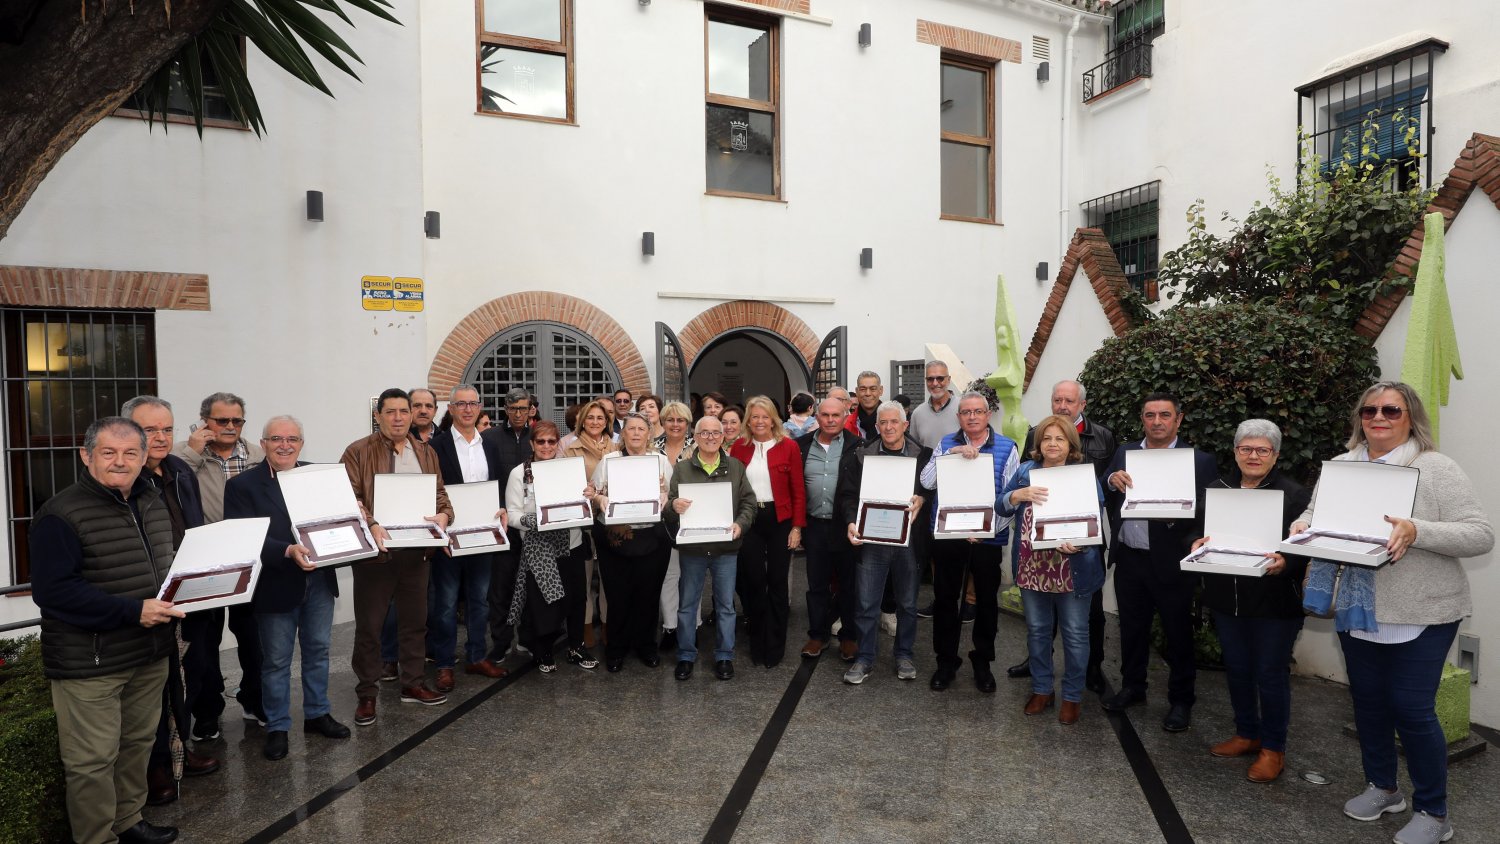 Marbella reconoce la profesionalidad de más de medio centenar de empleados municipales